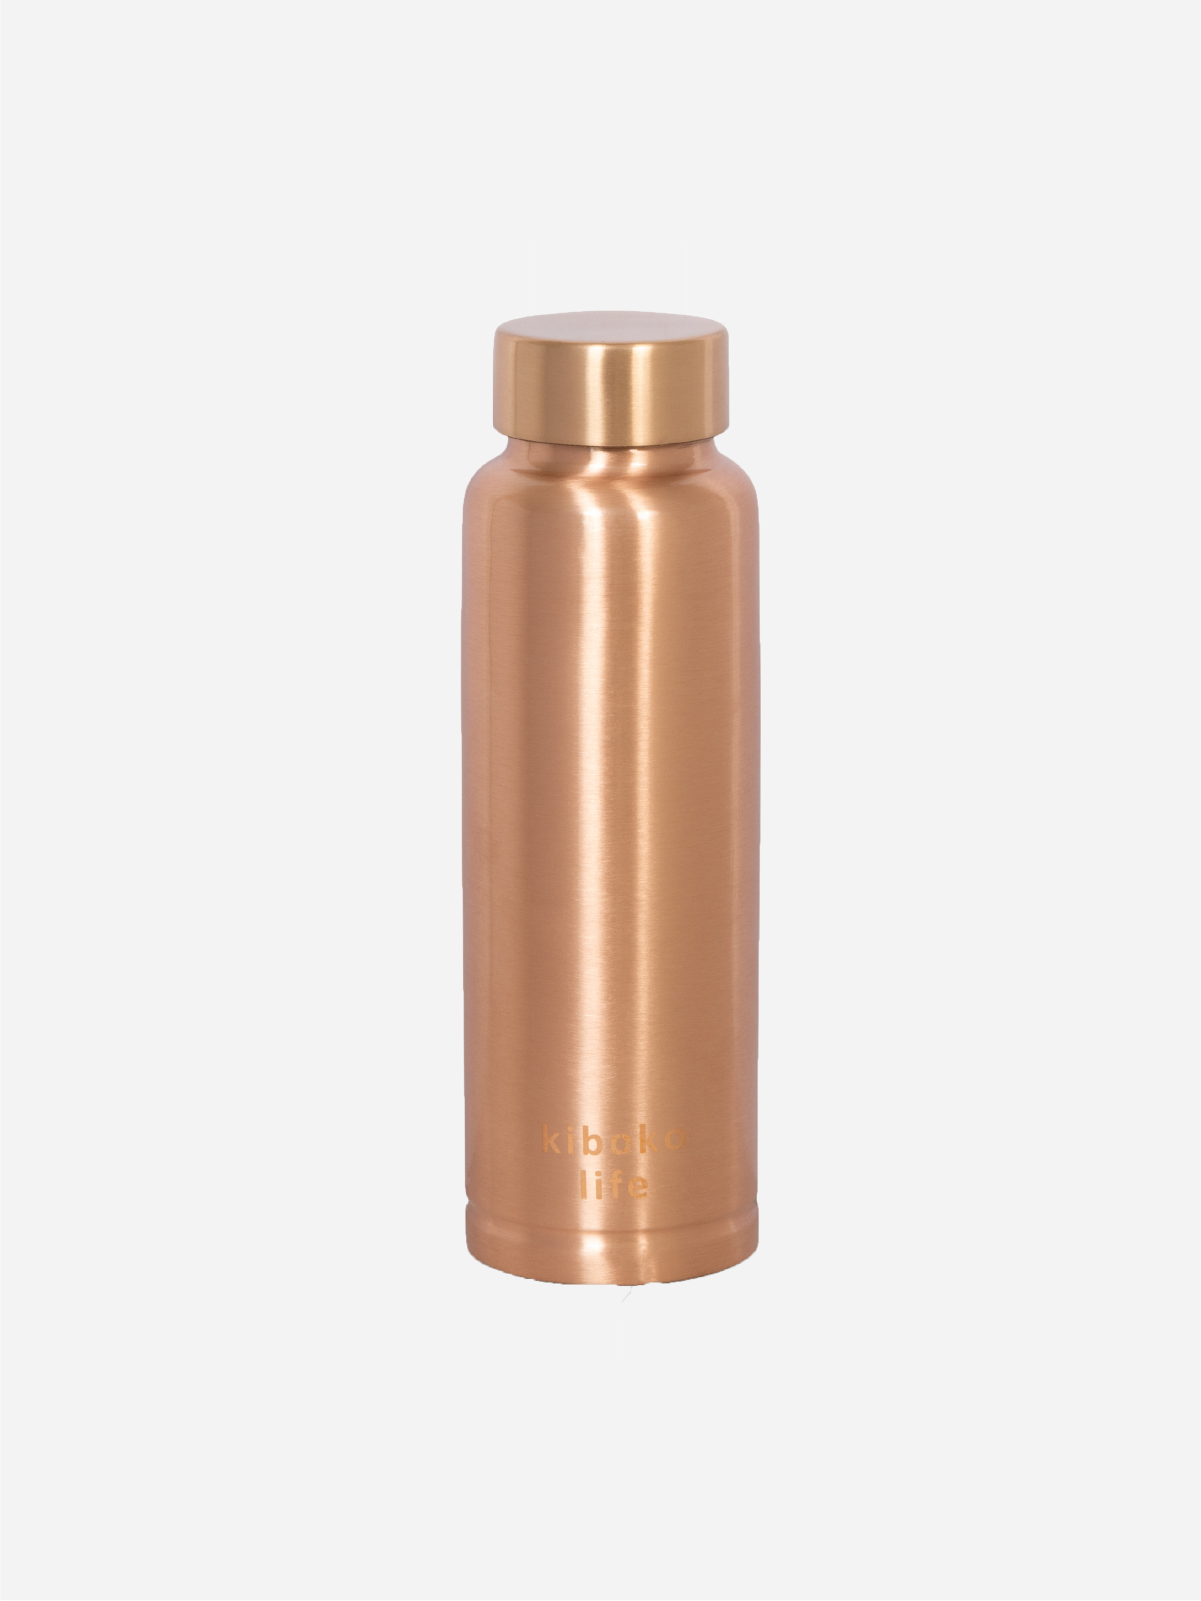 Classic copper water bottle 600ml